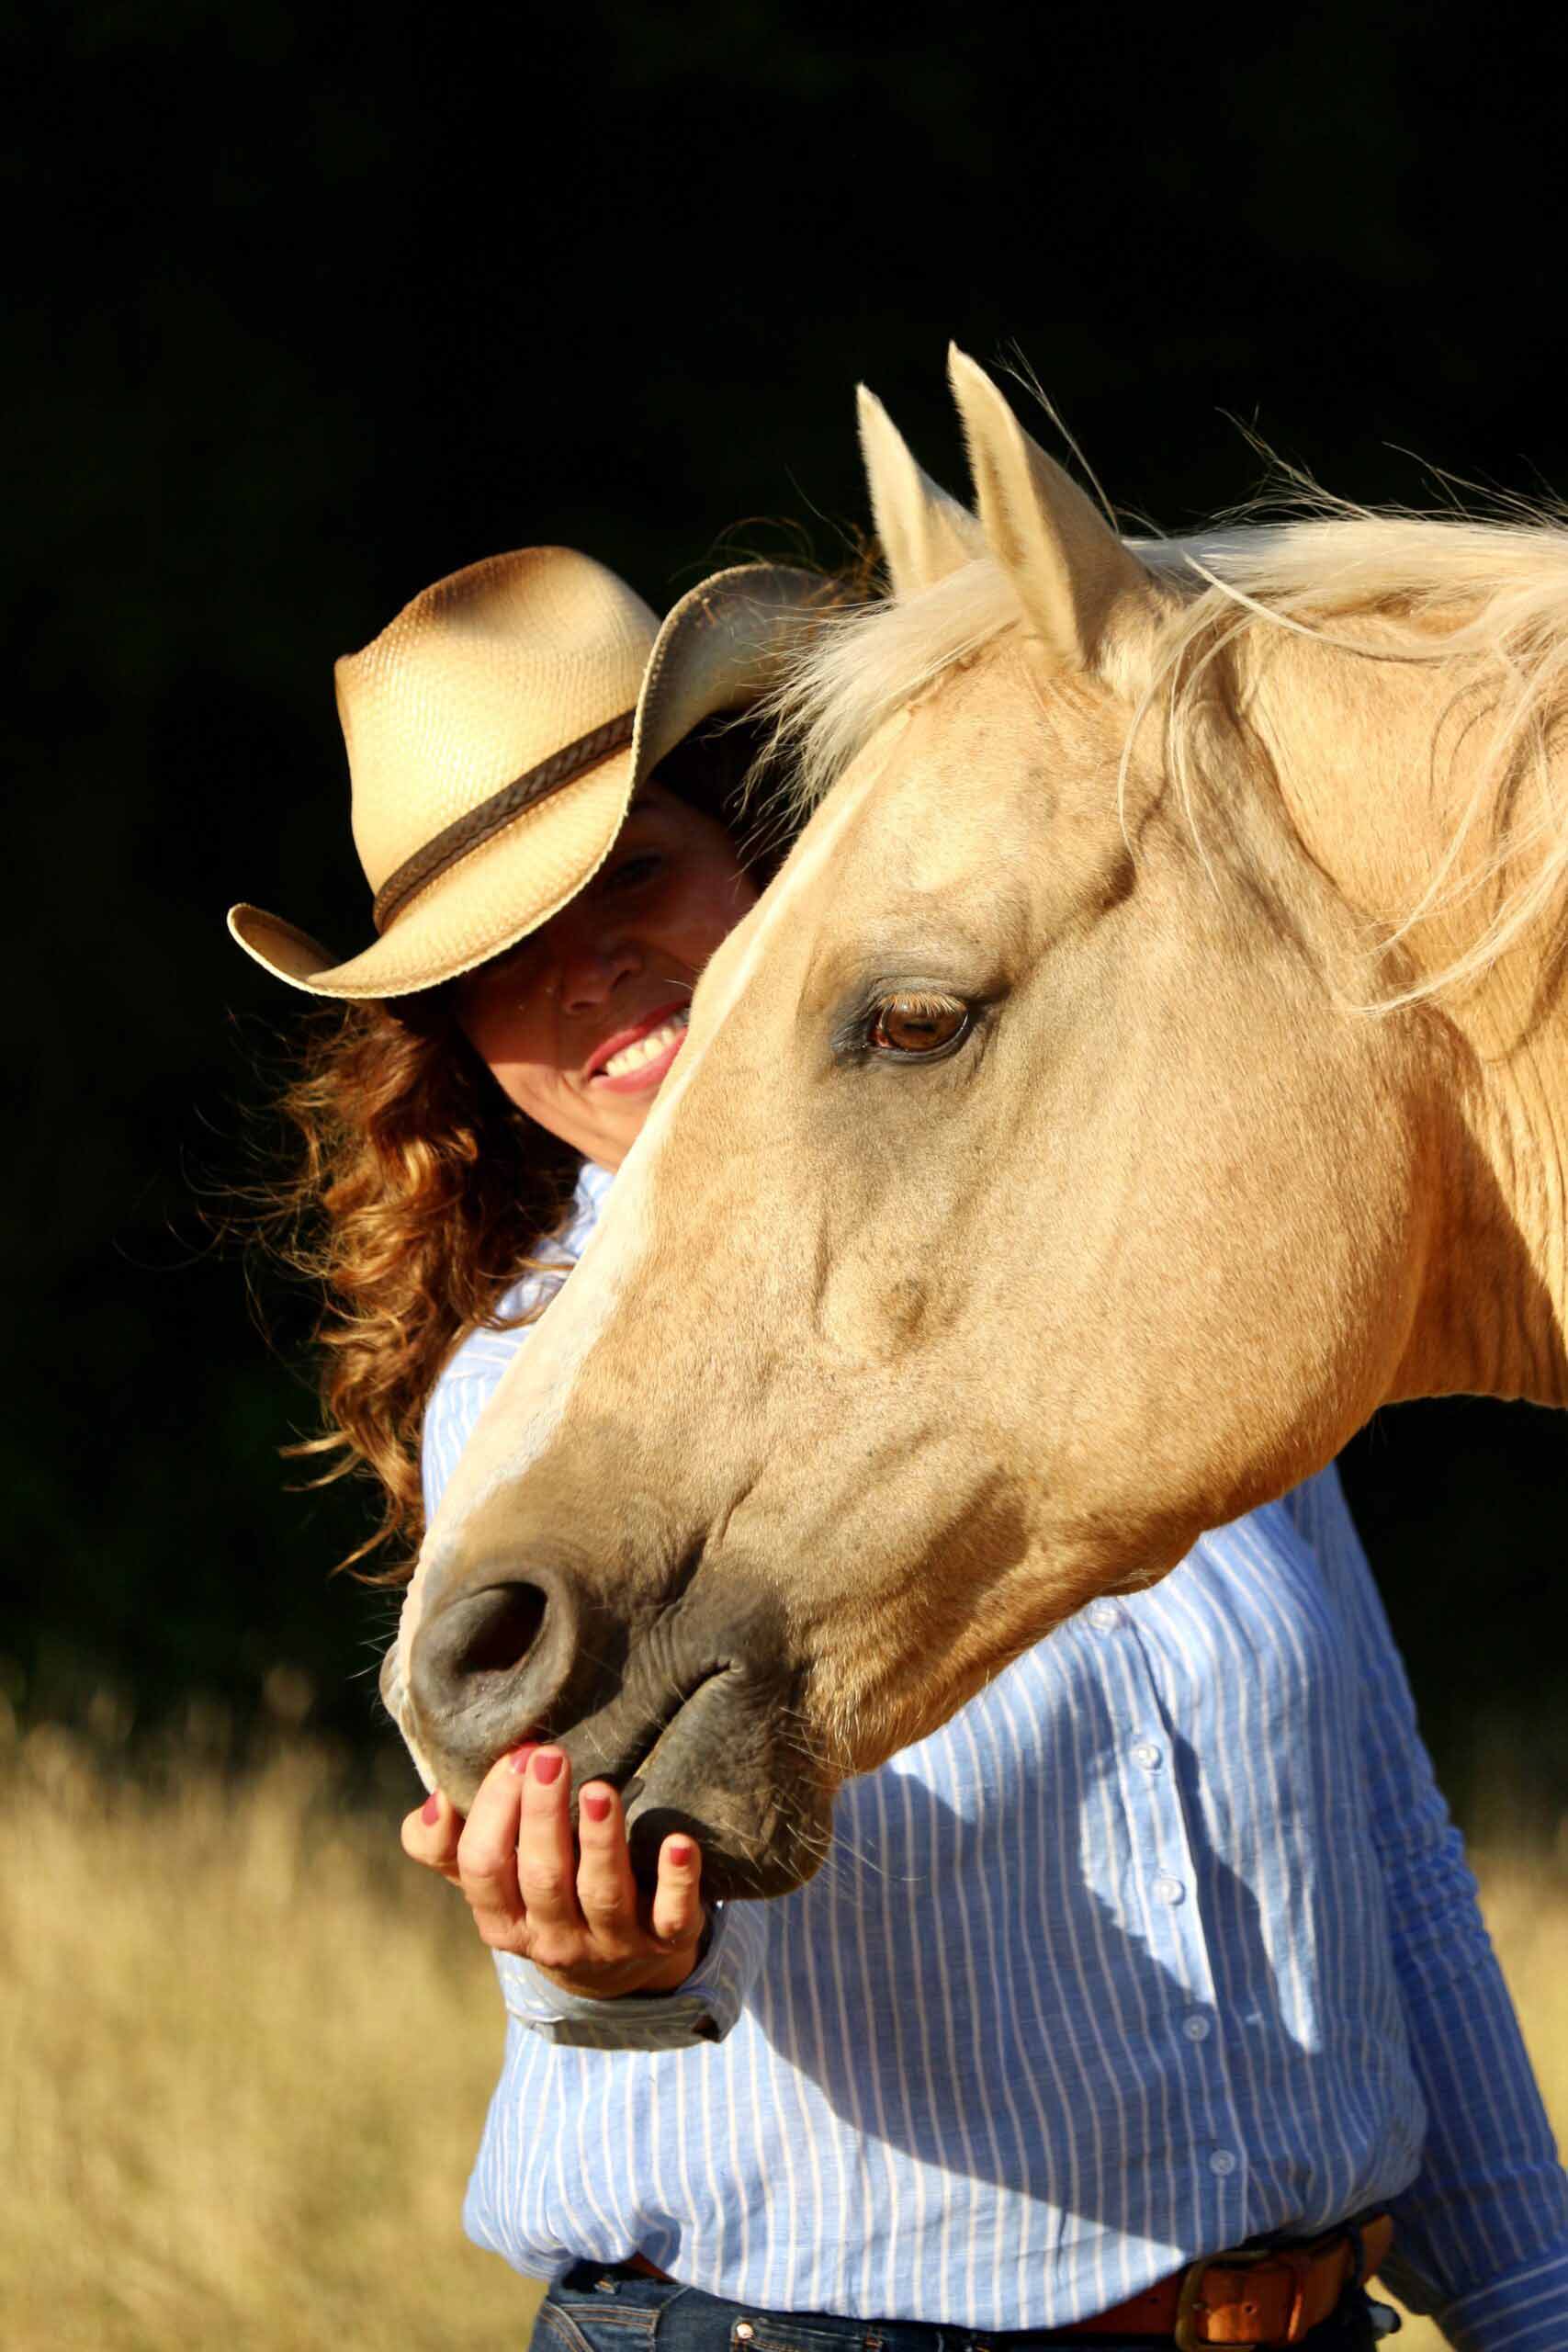 Tierkommunikatorin streichelt ihr Pferd Freeman, trägt einen Cowboyhut und schaut dabei lächelnd in die Kamera.